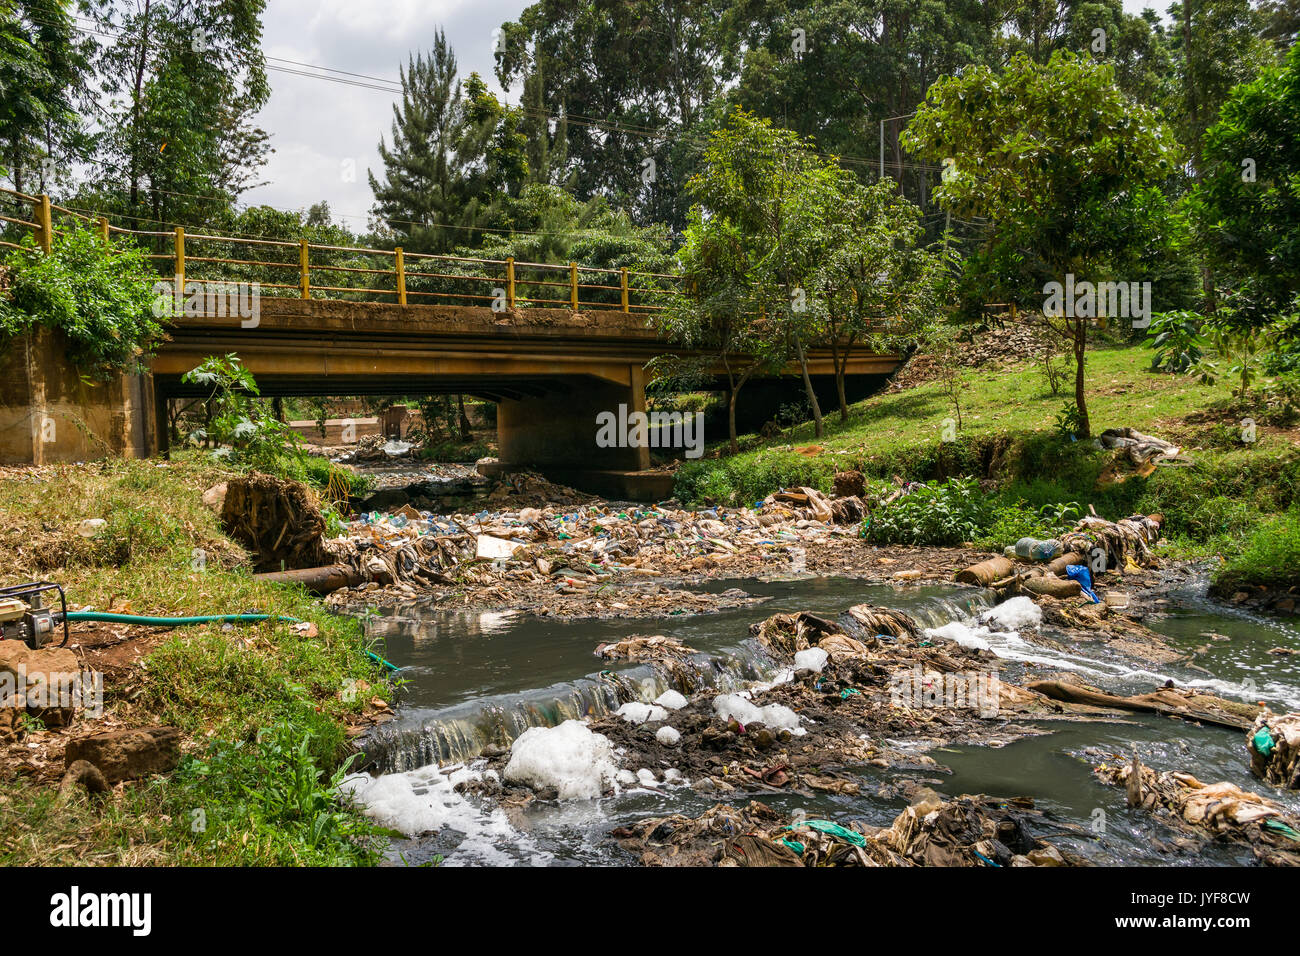 Bottiglie di plastica e altri rifiuti spazzatura bloccando il fiume di Nairobi, Kenya Foto Stock